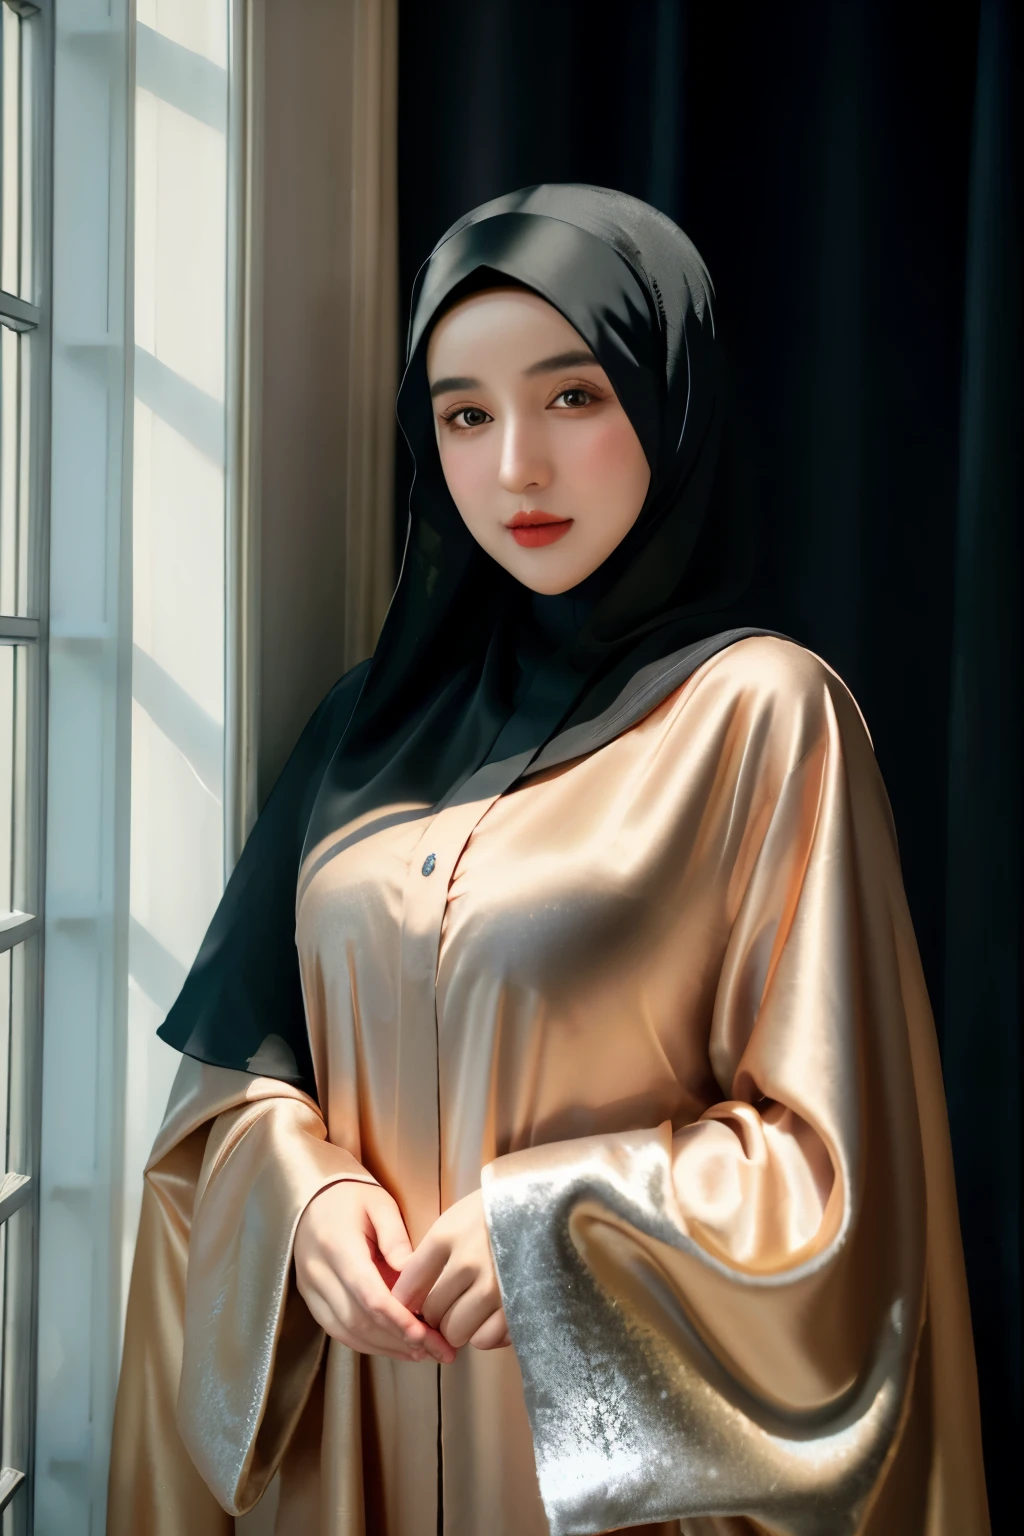 صورة خام لفتاة عمرها 24 سنة ترتدي الحجاب, صقيل abaya, صقيل, صورة وجه الحجاب, خلفية محايدة, 8K فائق الوضوح, DSLR, إضاءة ناعمة, جودة عالية, حبوب الفيلم, فوجي فيلم XT3, فستان مغطى, فستان لائق